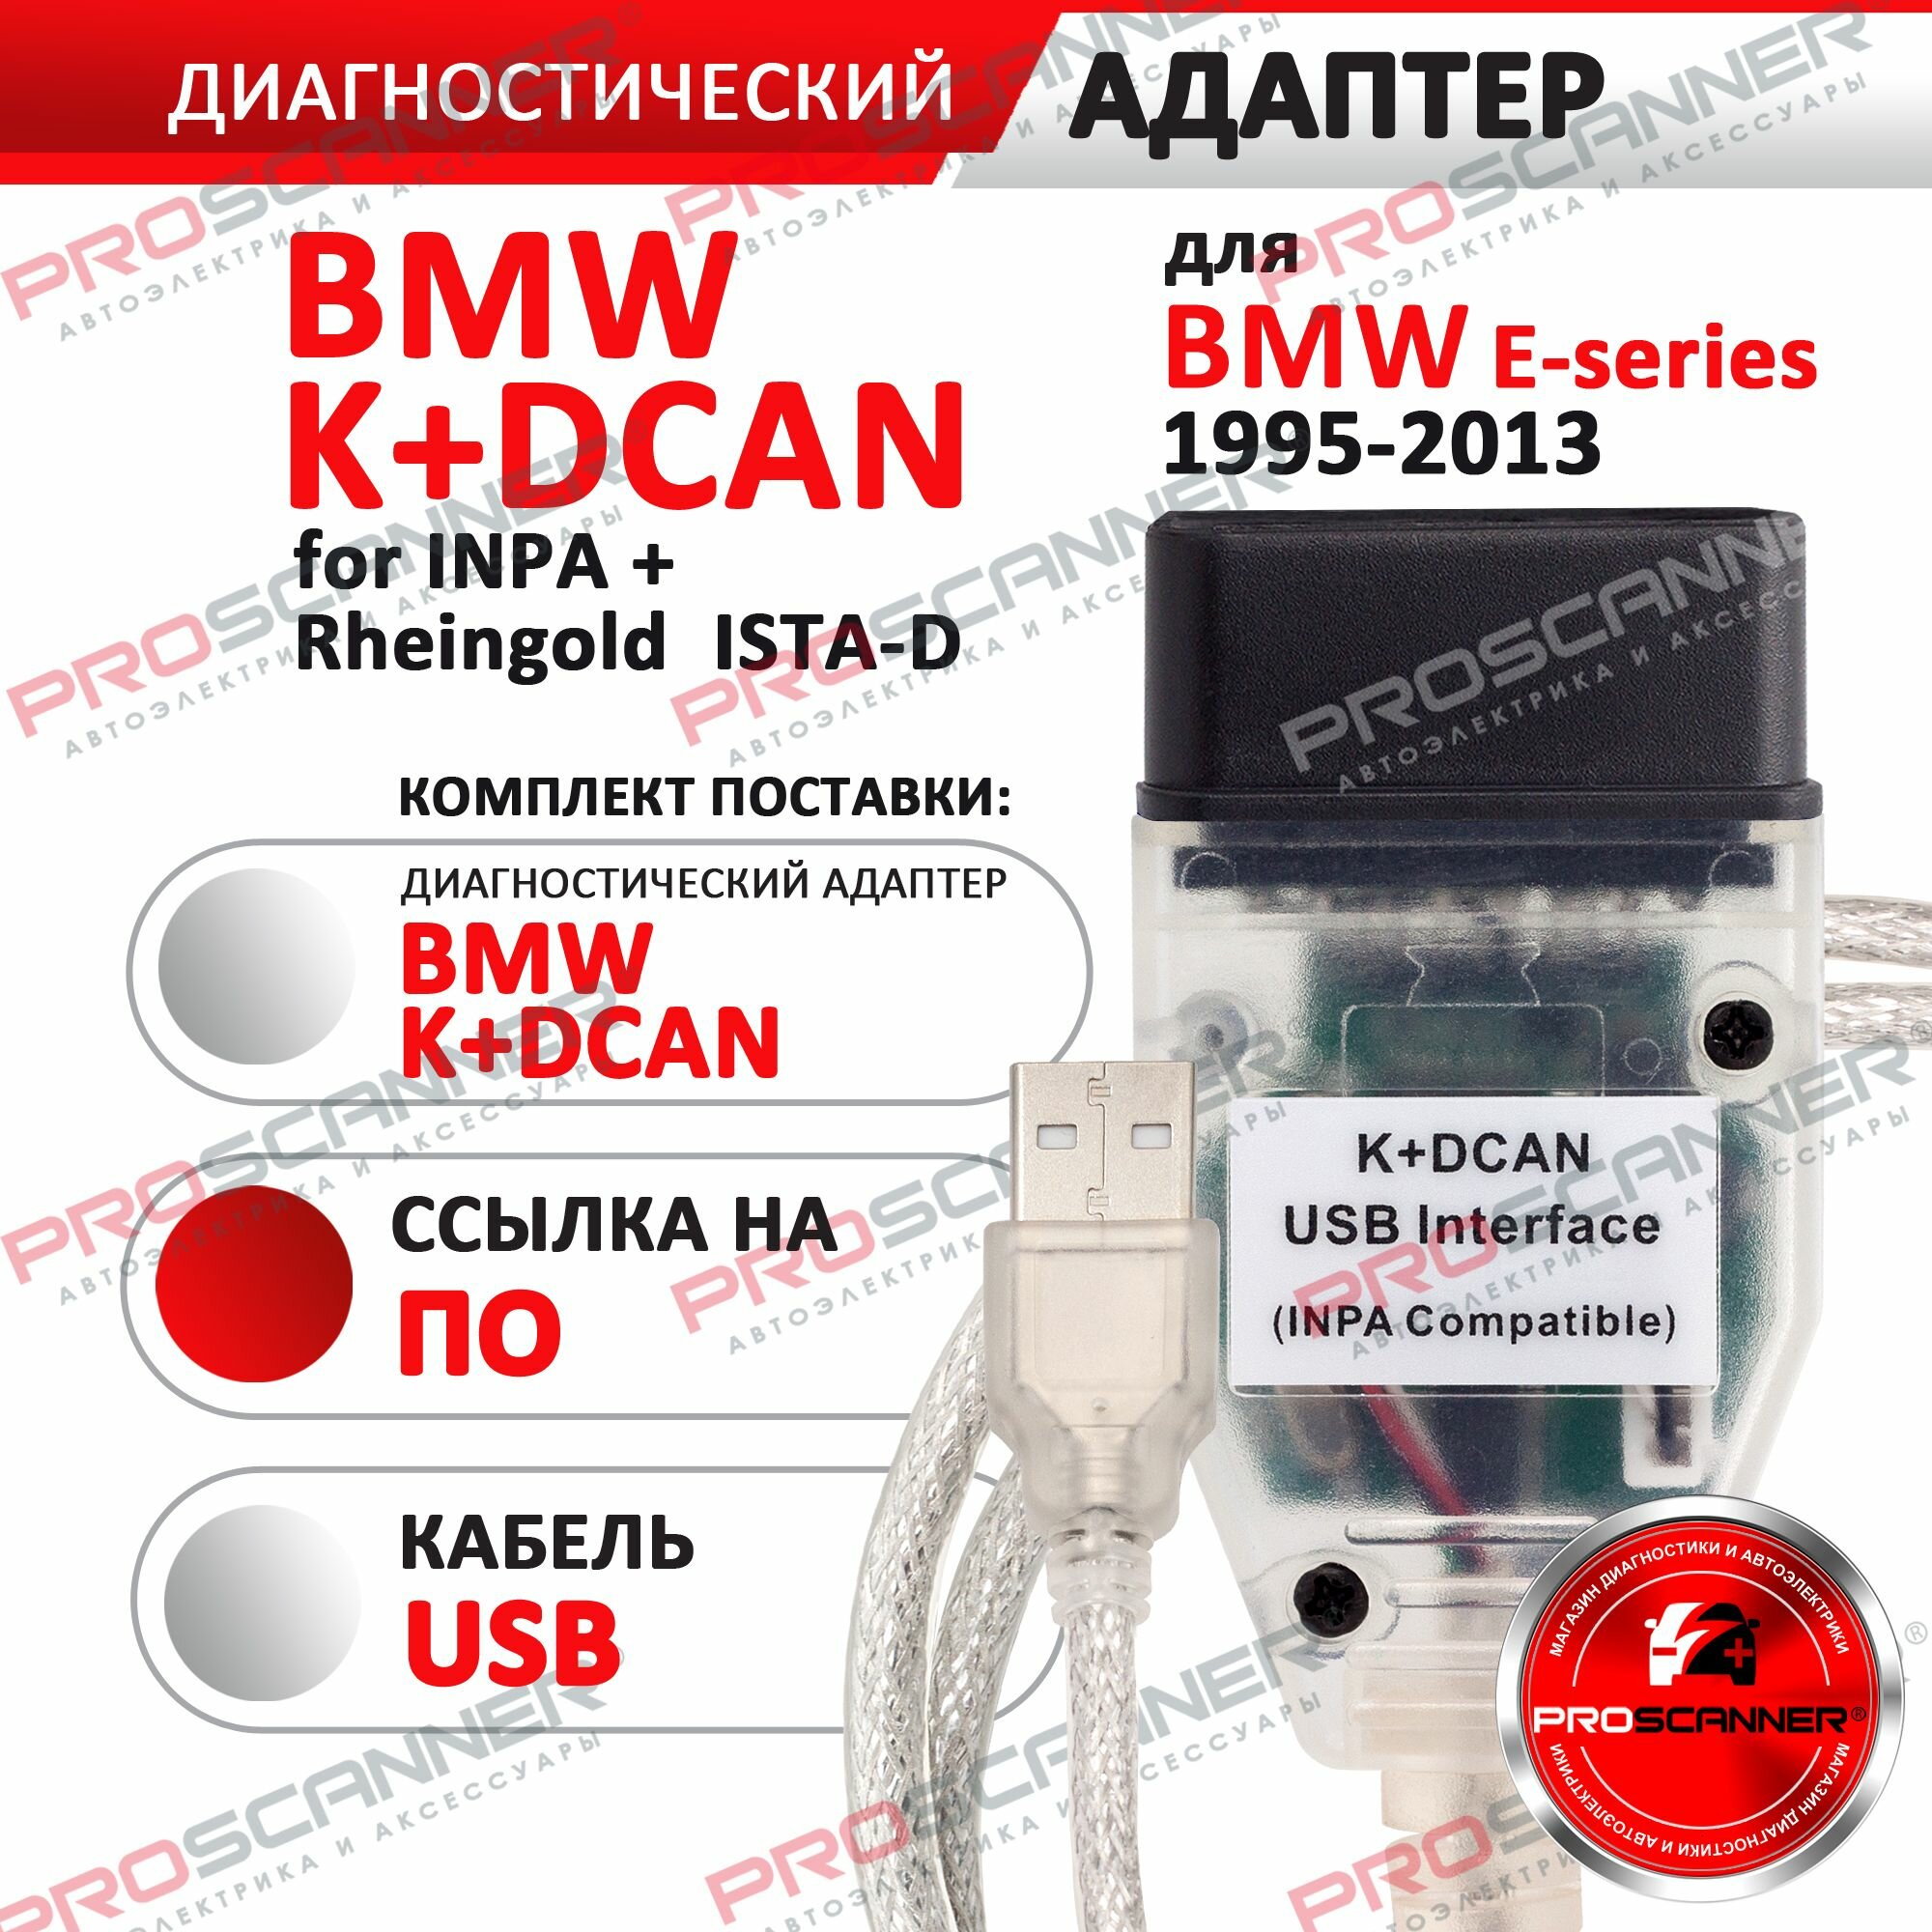 Автосканер для BMW K+Dcan 1995-2013 год / адаптер диагностический для Inpa, Rheingold